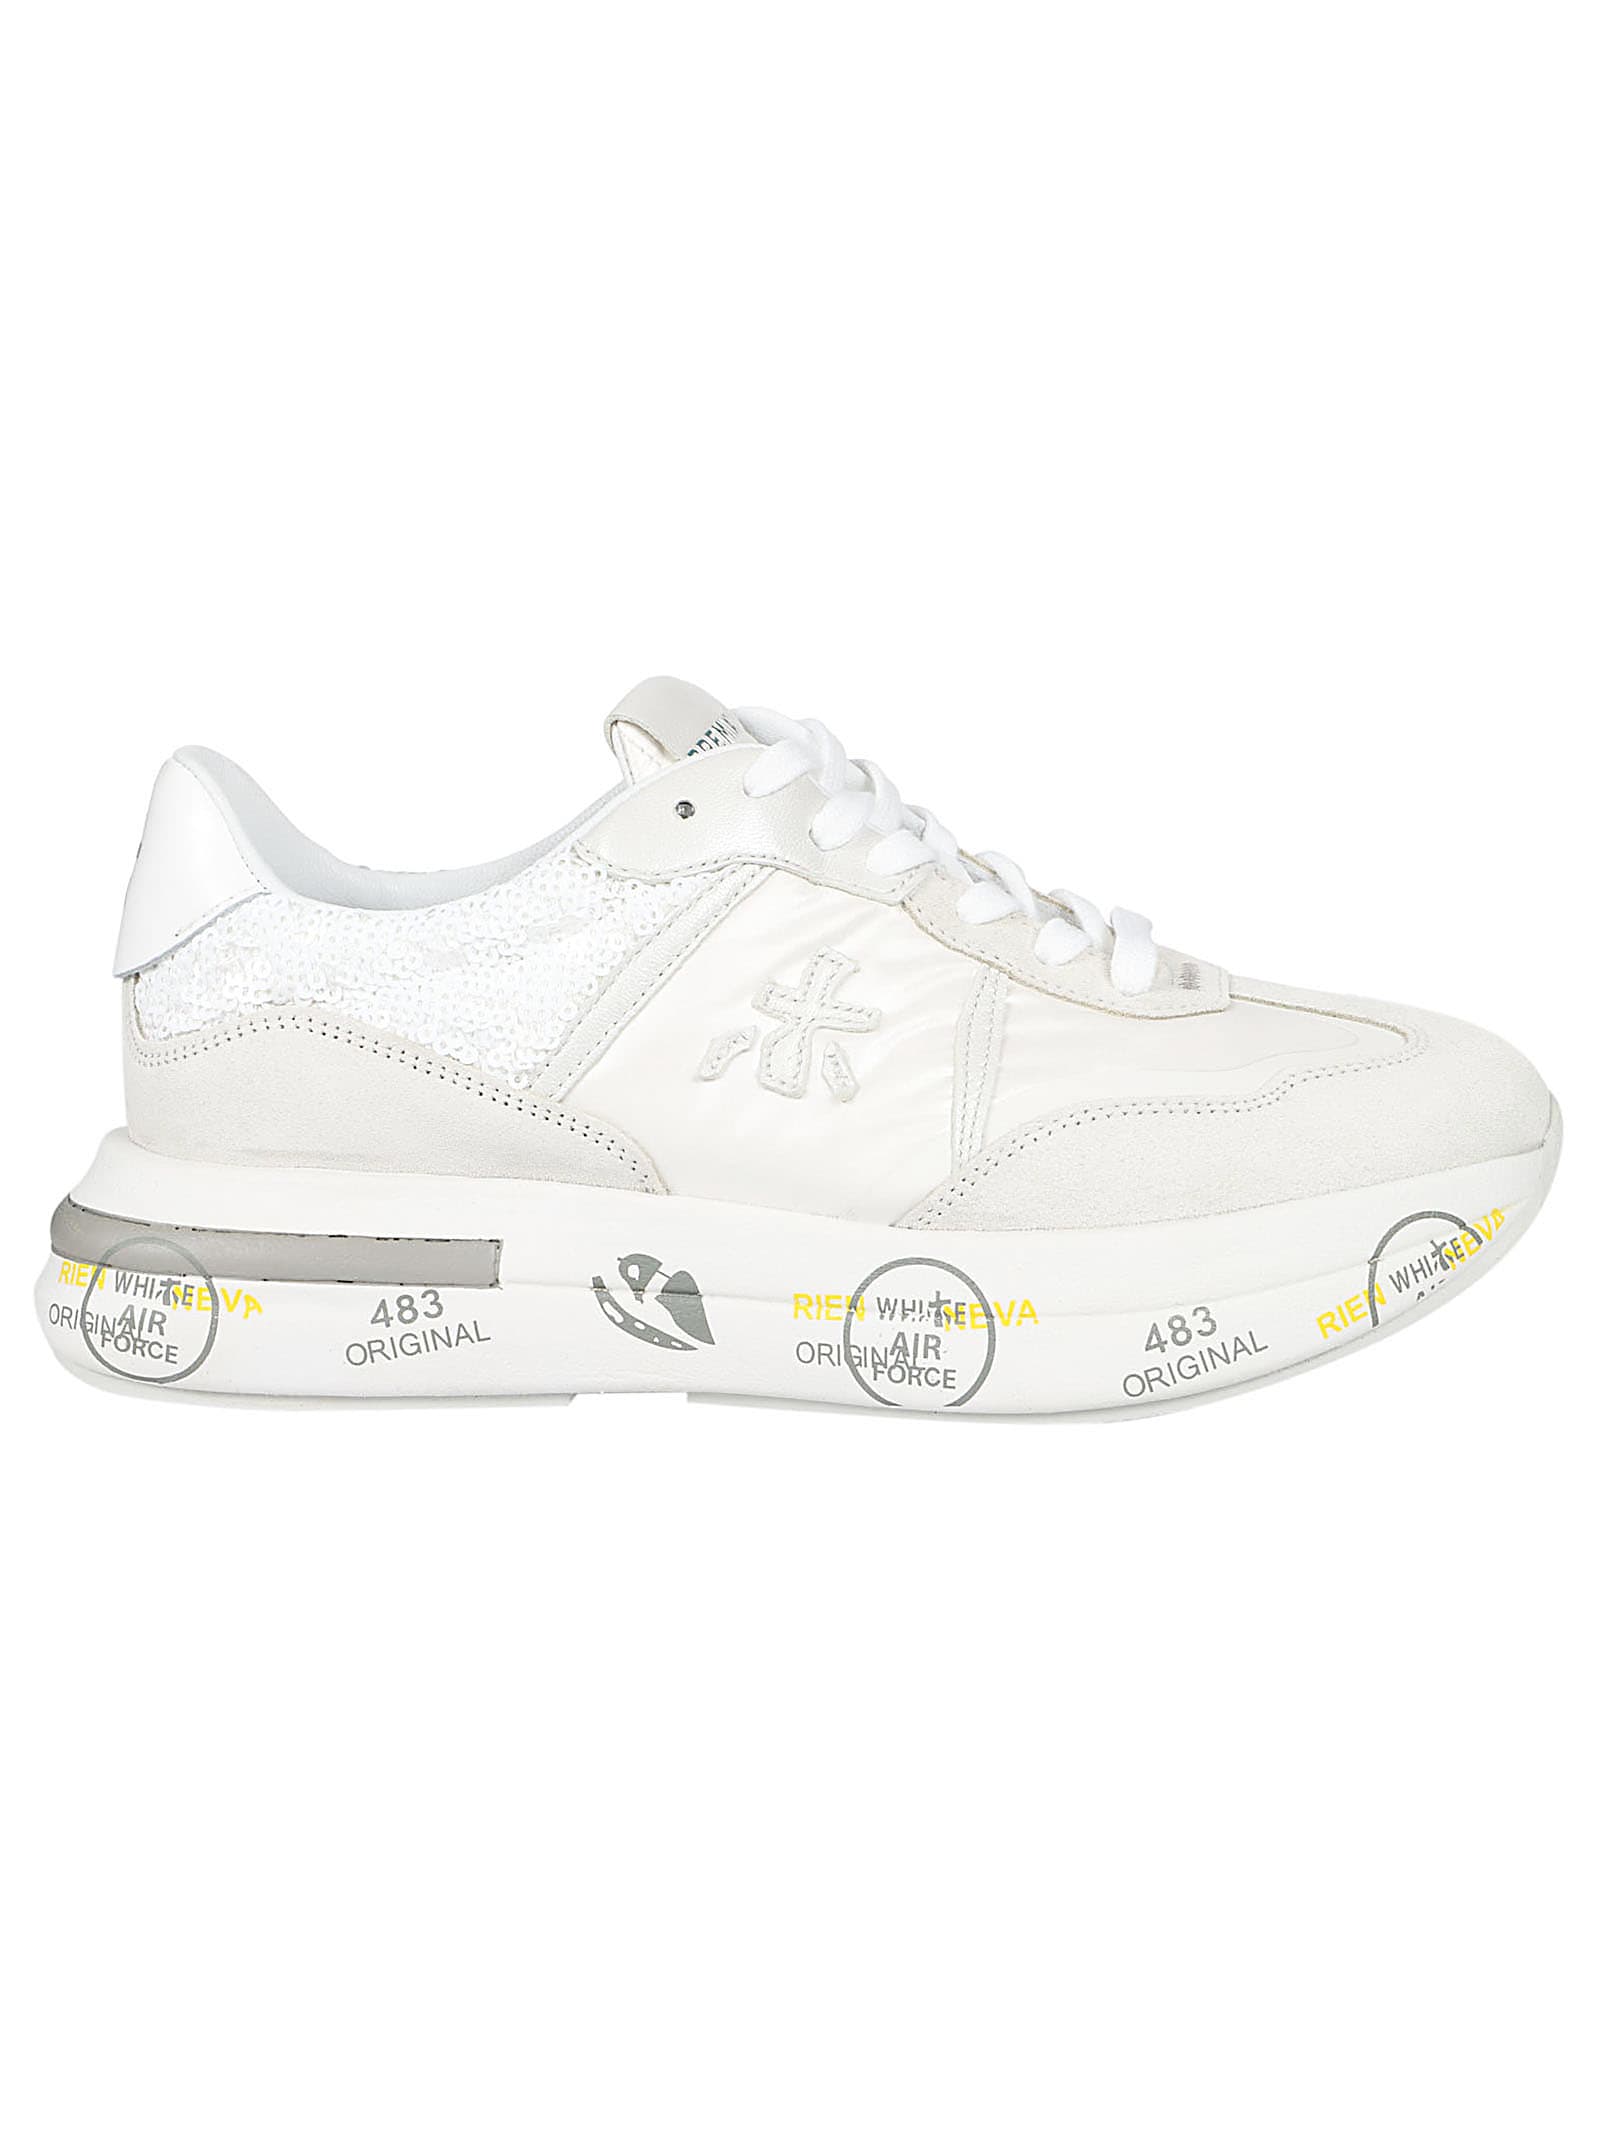 Shop Premiata Cassie Sneakers In Grey/white